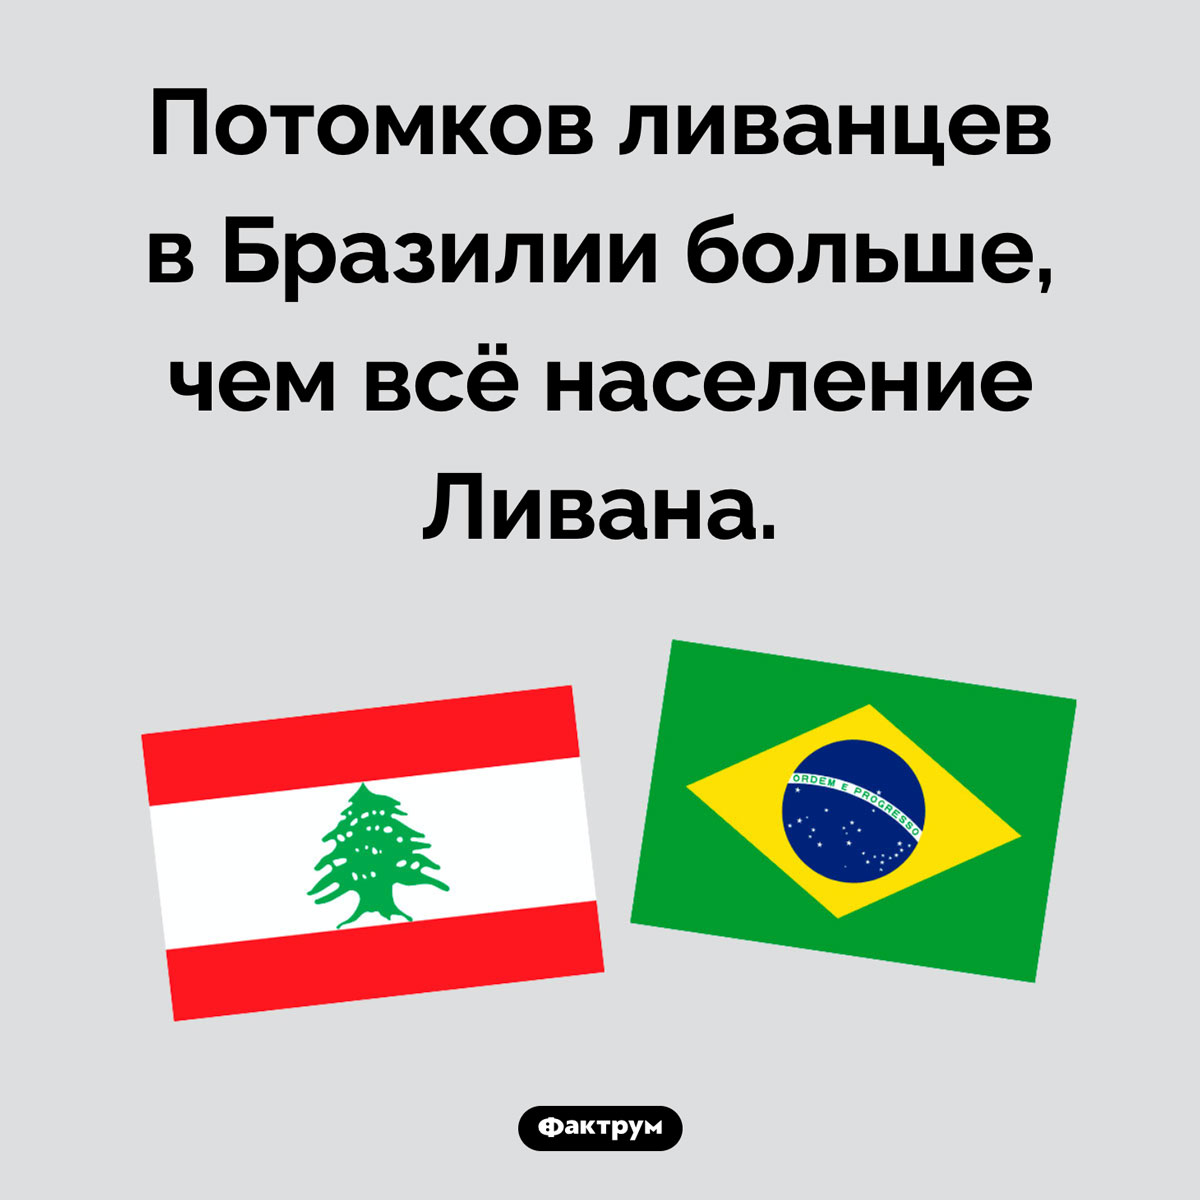 Где живет больше всего ливанцев. Потомков ливанцев в Бразилии больше, чем всё население Ливана.